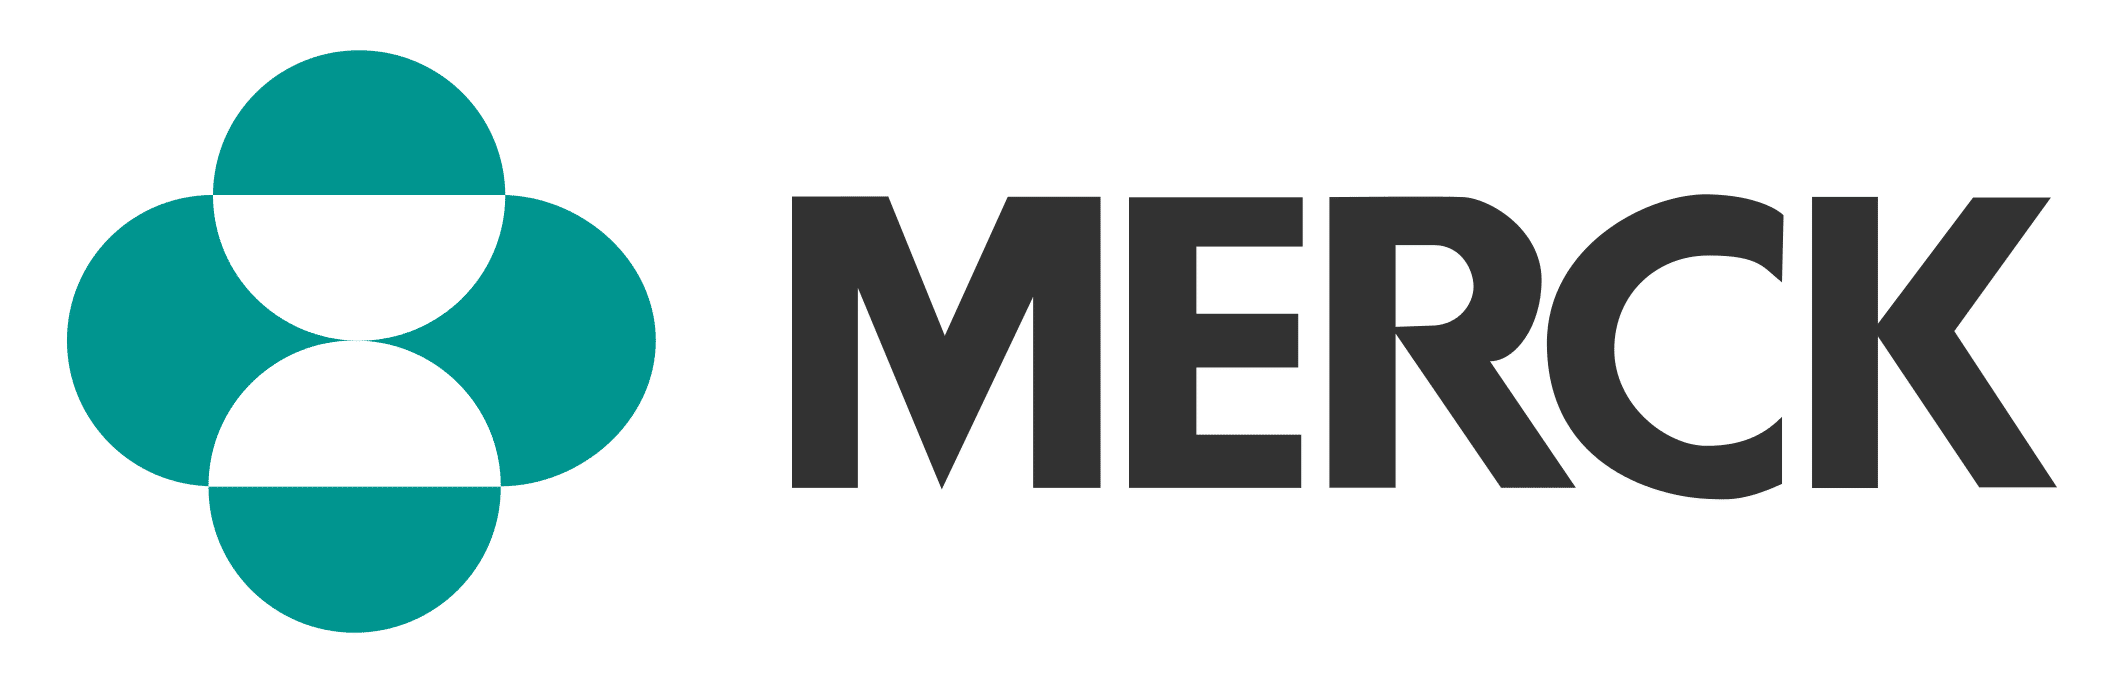 MERCK logo.png